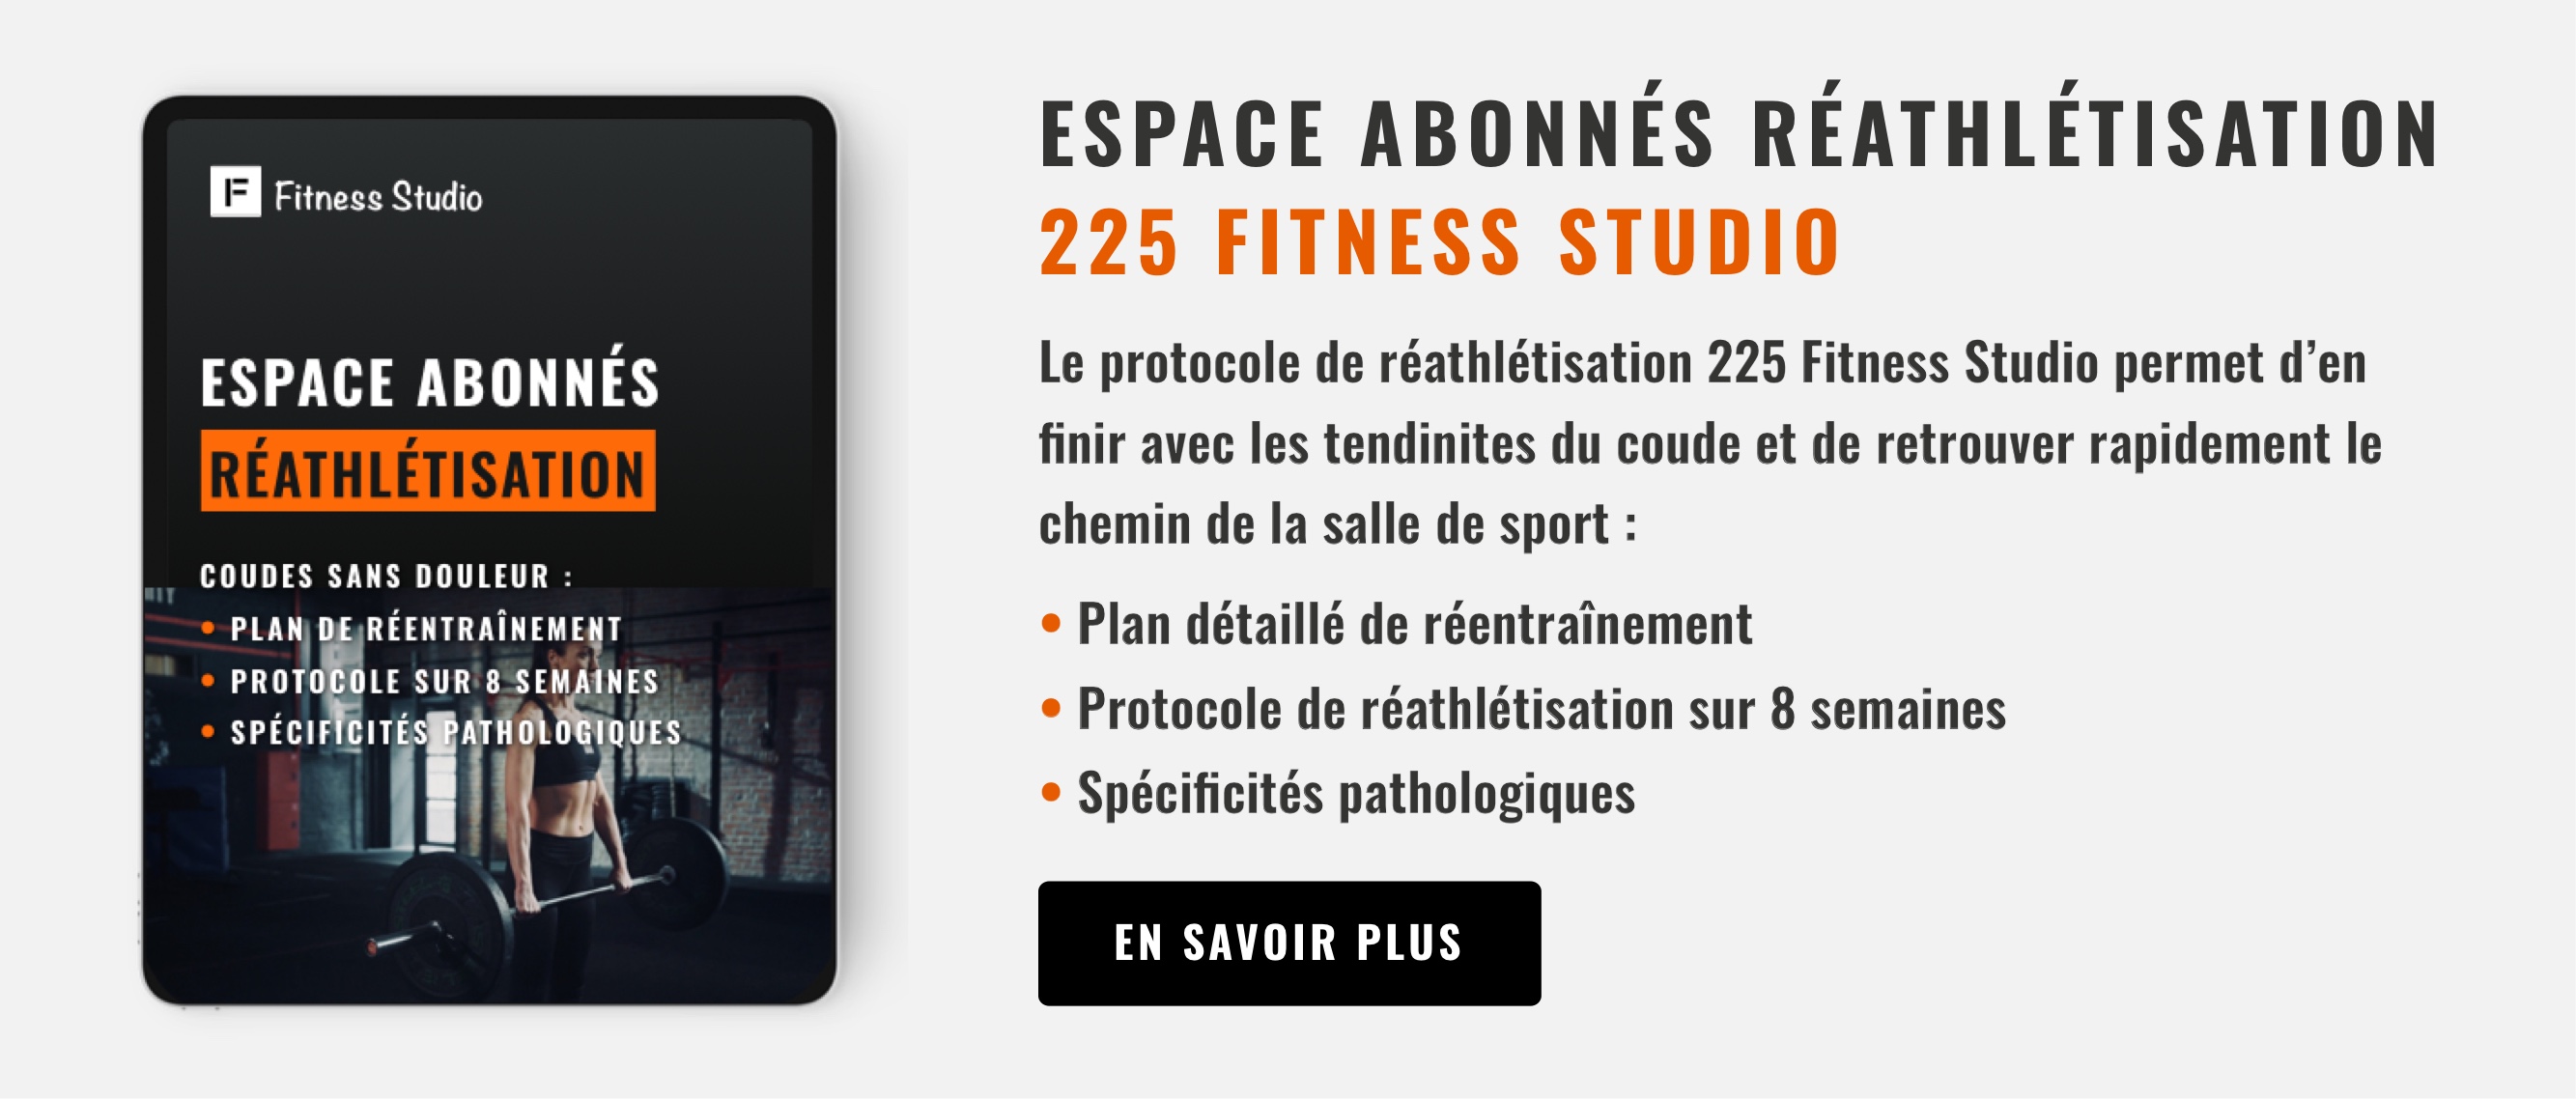 espace abonné réathlétisation - 225 Fitness Studio